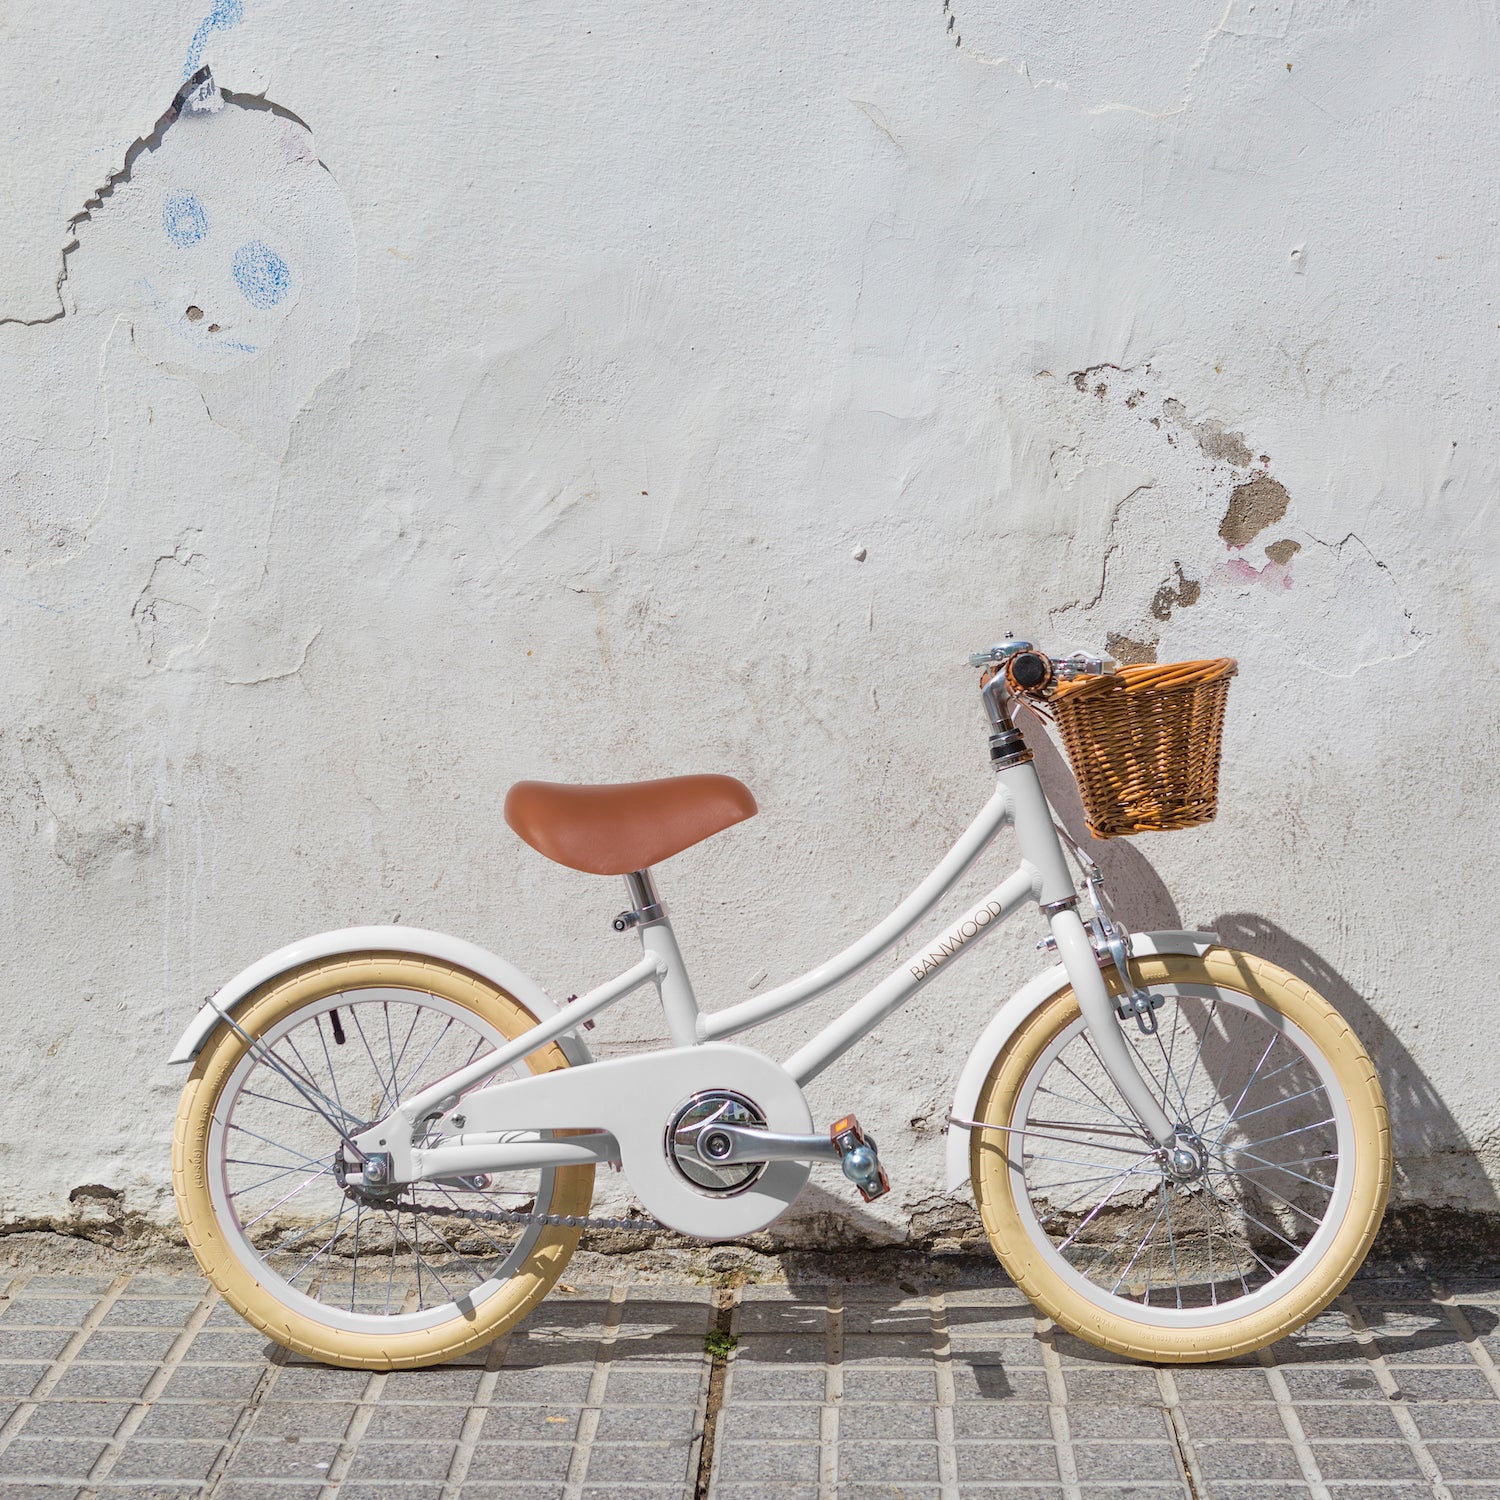 banwood classic pedal bike